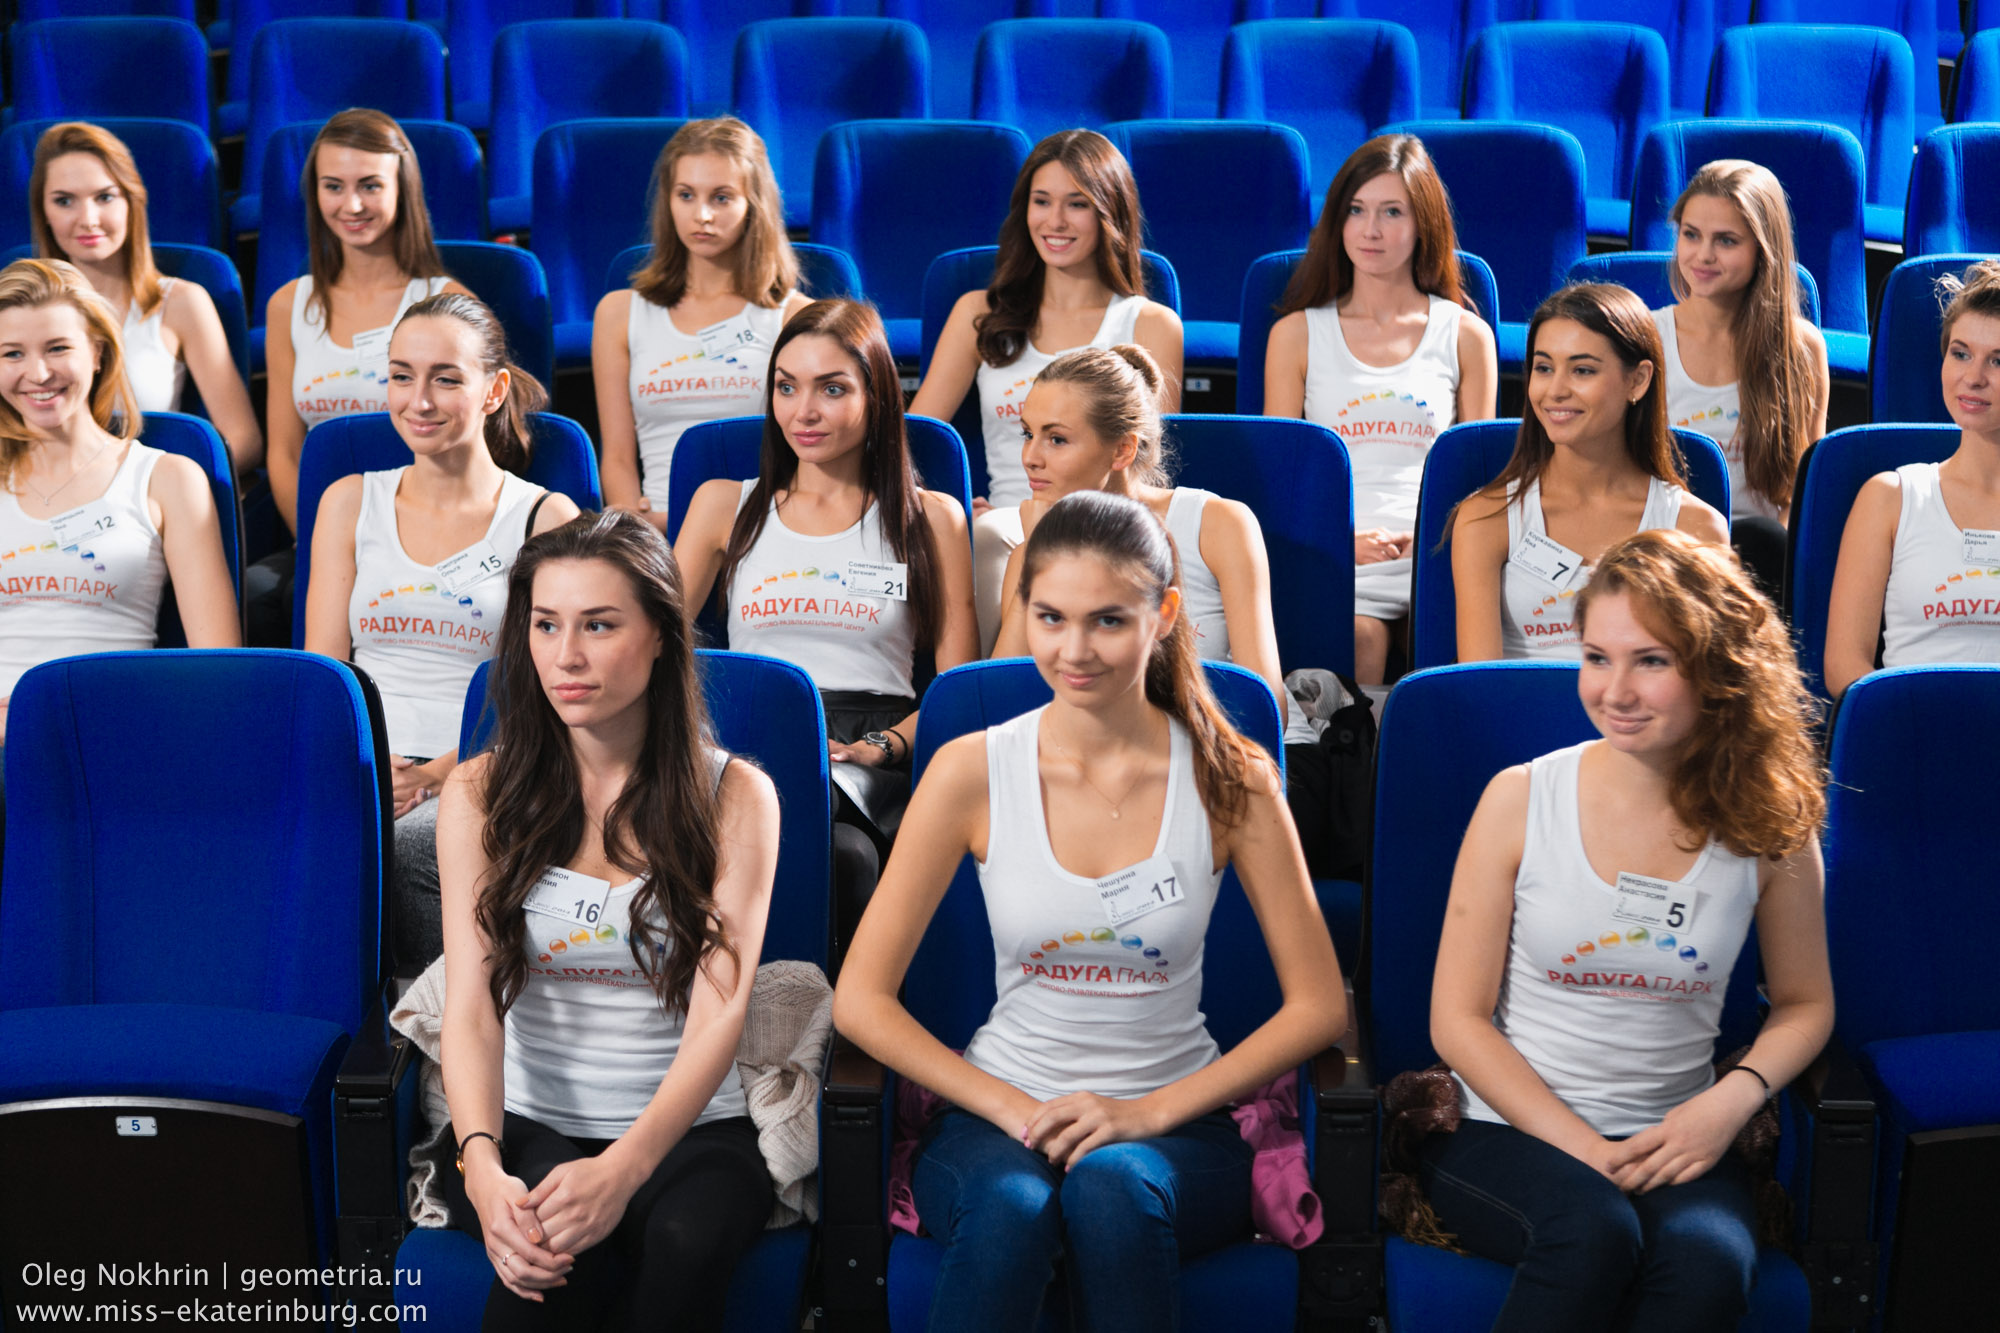 Конкурс «Мисс Екатеринбург — 2014» вышел на финишную прямую